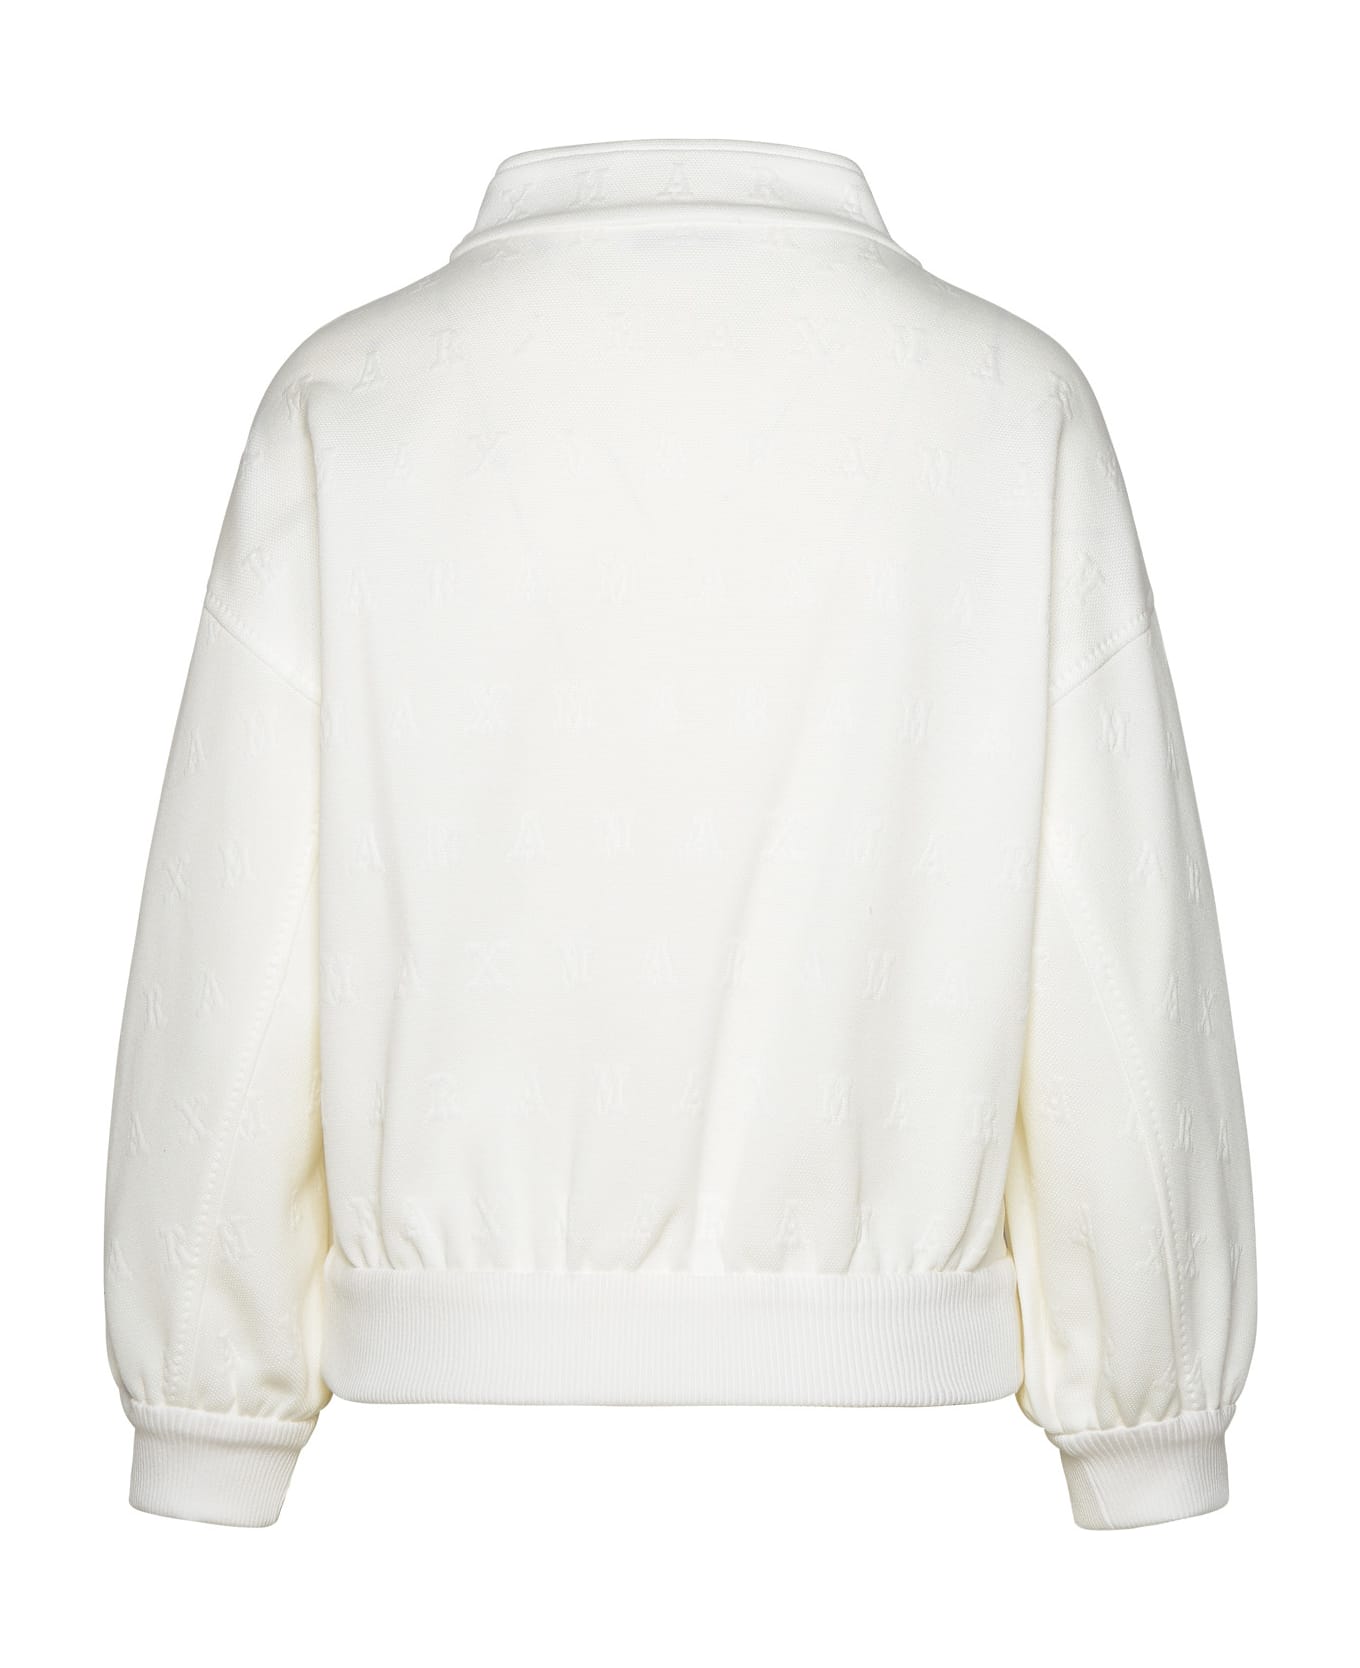 Max Mara 'gastone' Crop Jacket In White Cotton Blend - White